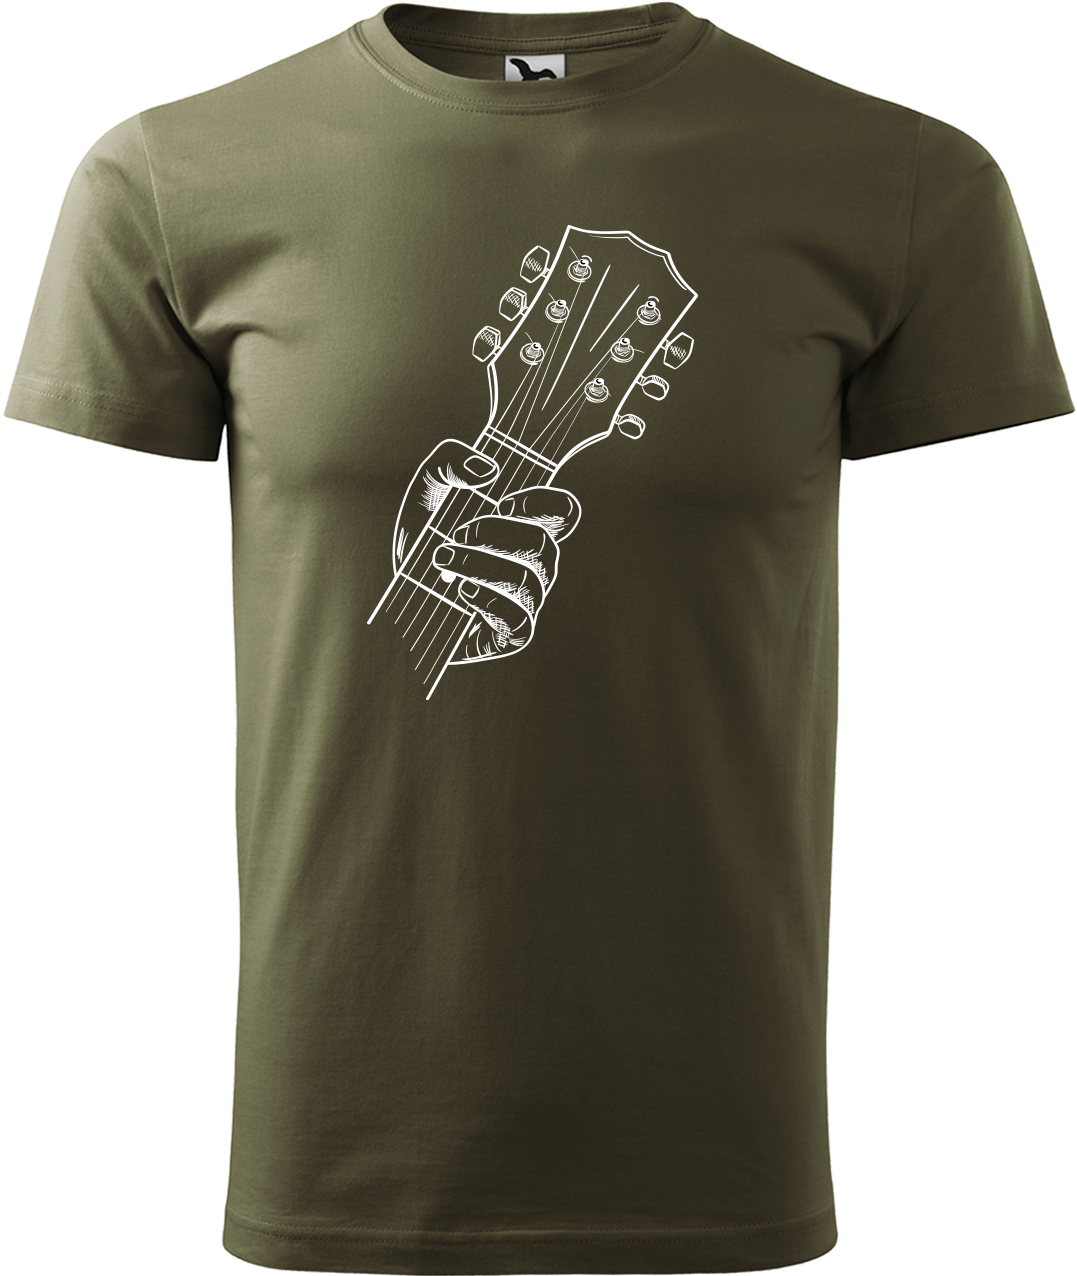 Pánské tričko s kytarou - Hlava kytary Velikost: 4XL, Barva: Military (69)